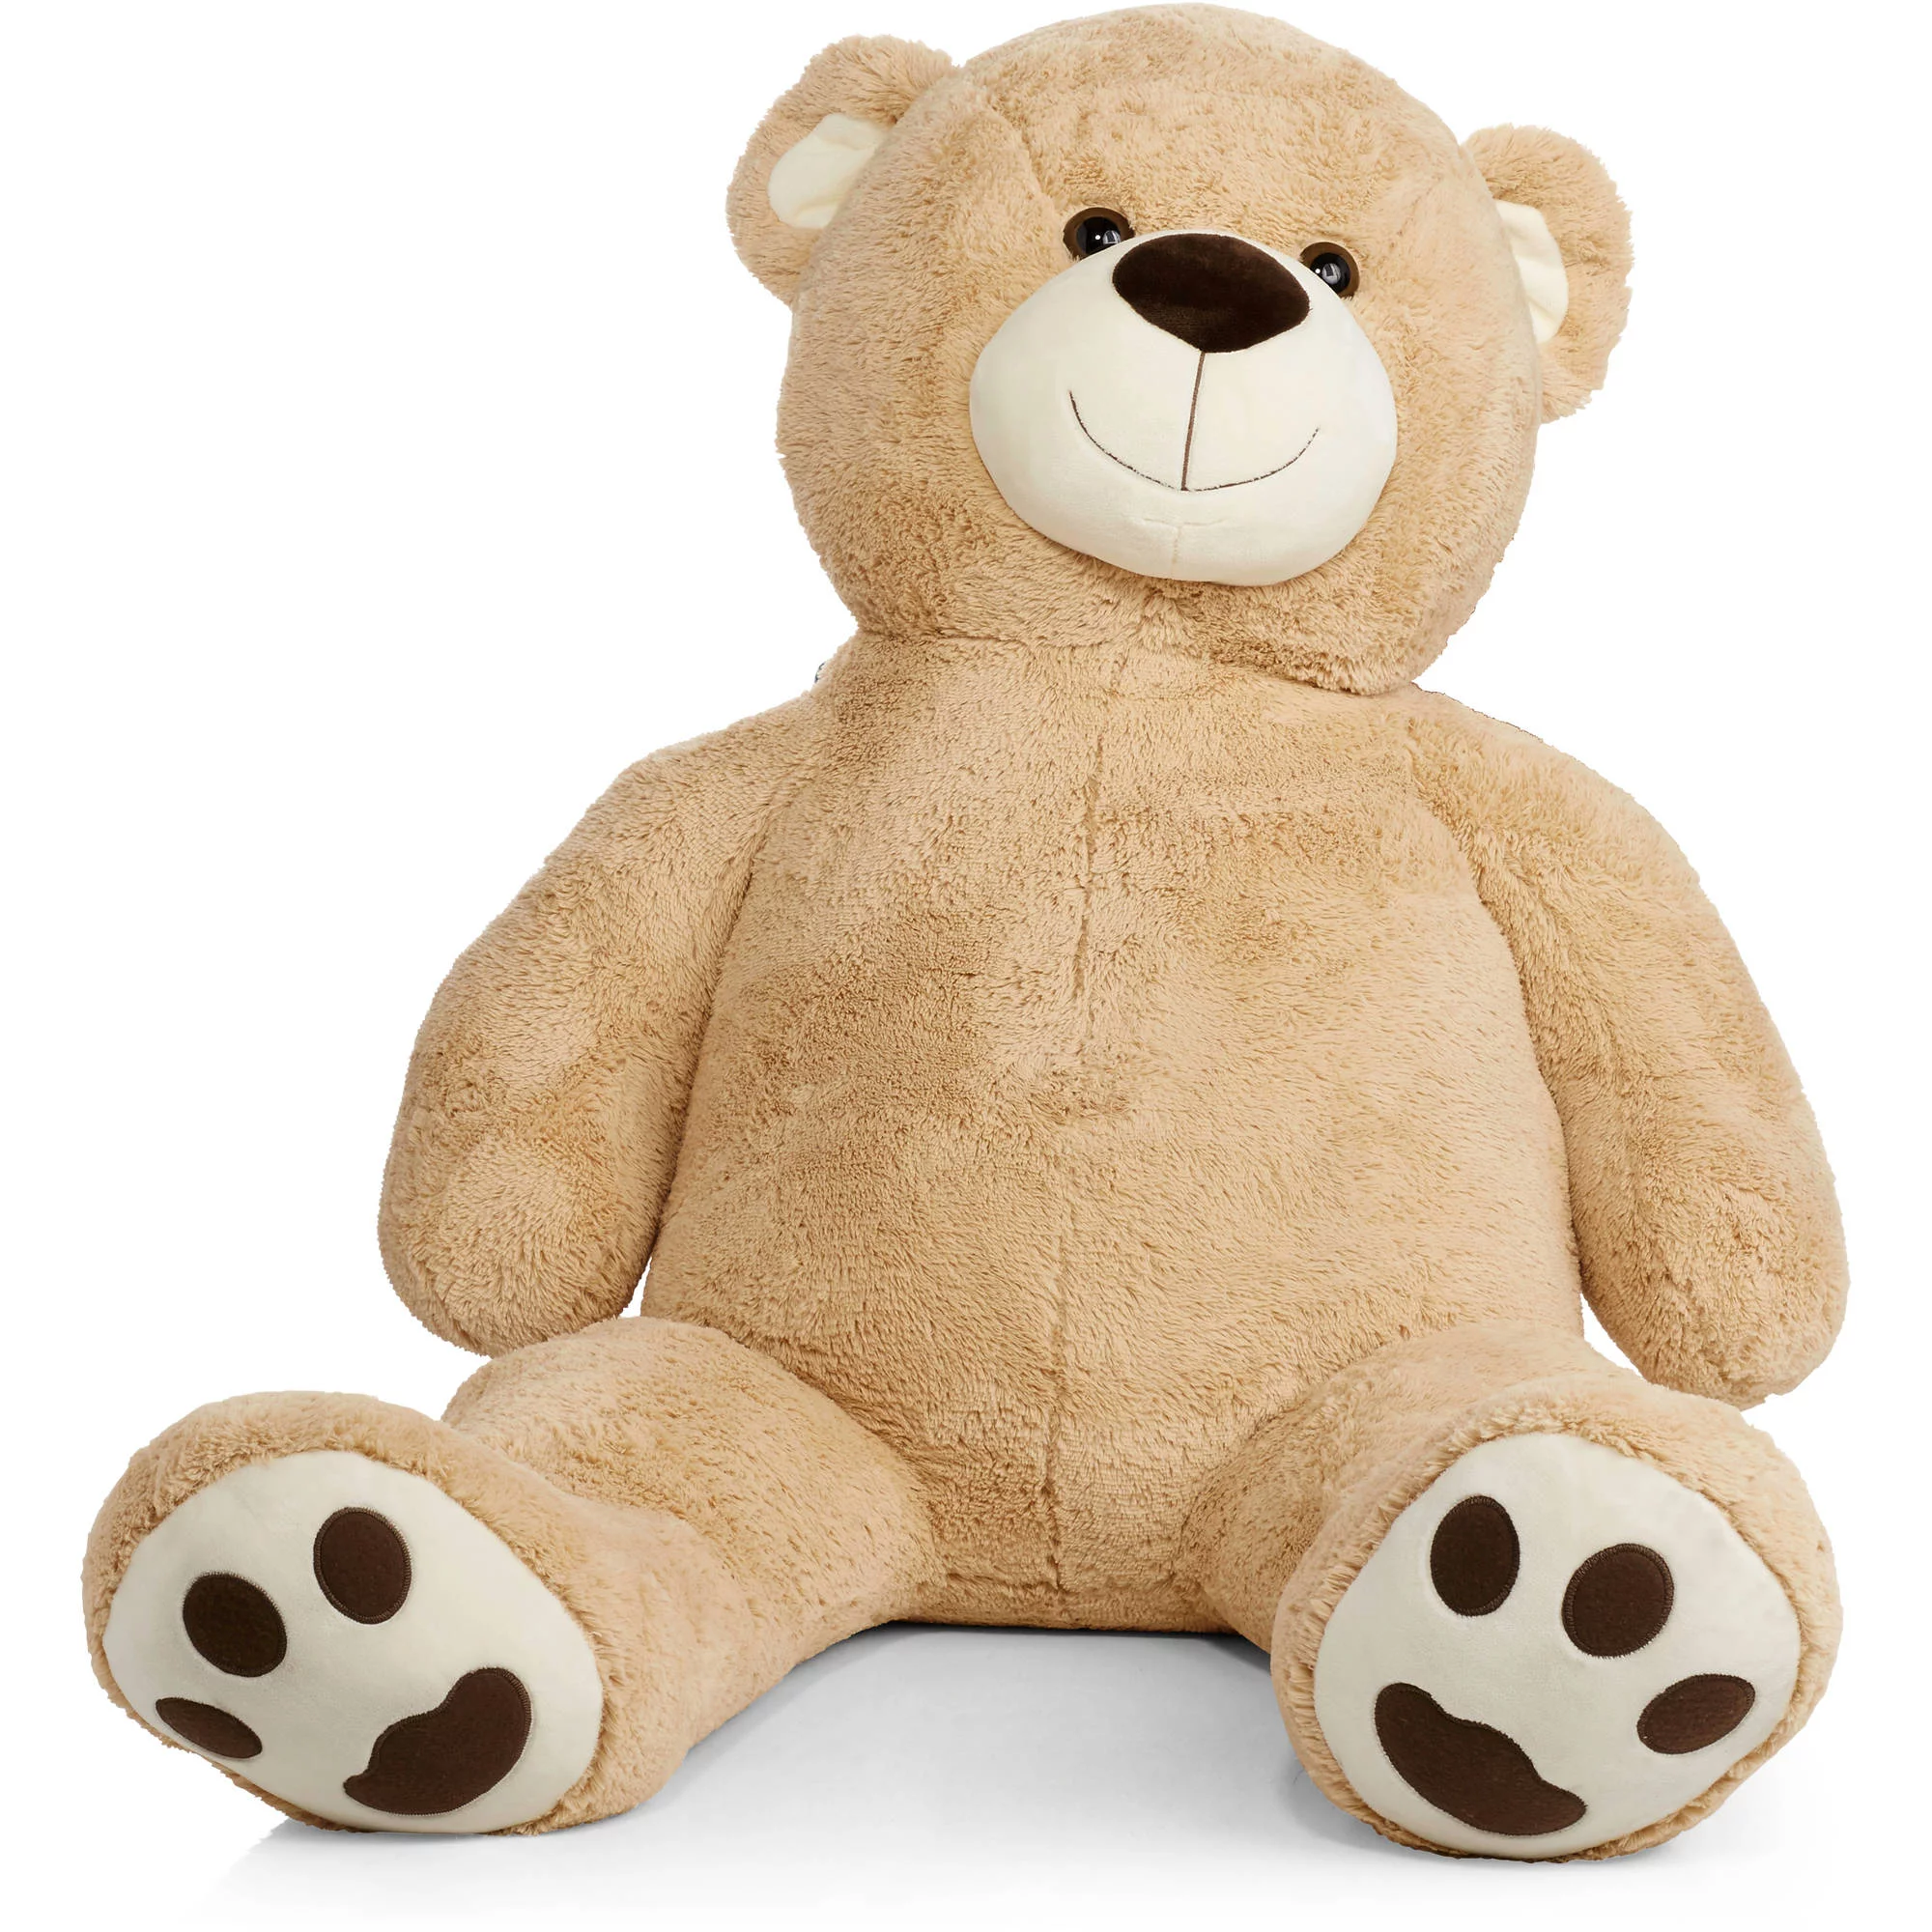 4 foot teddy bear walmart